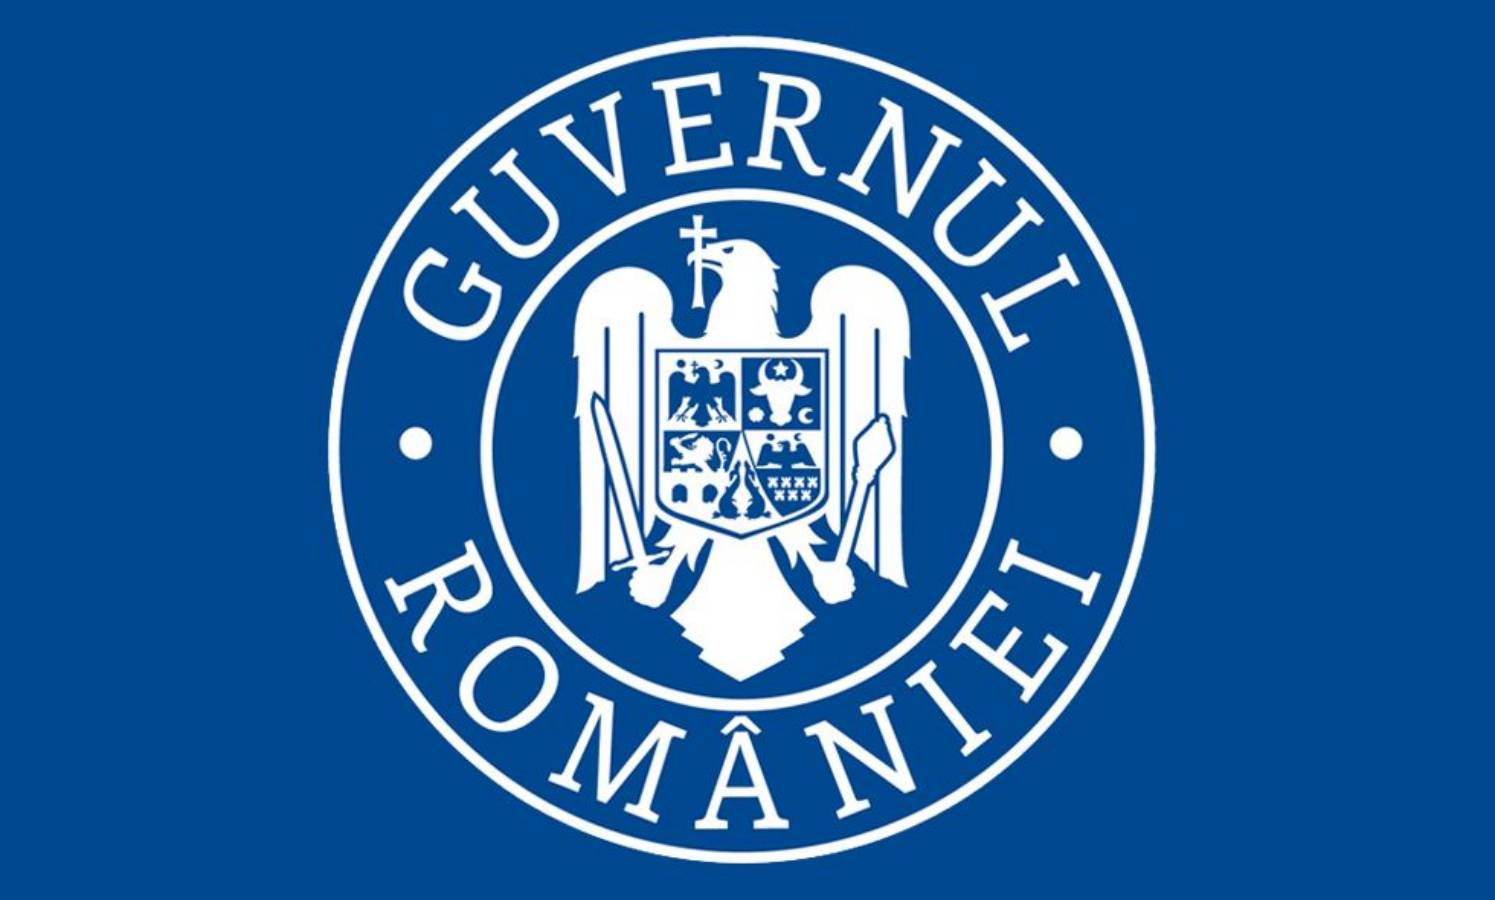 Romanian hallitus uudet lievennystoimenpiteet 15. kesäkuuta